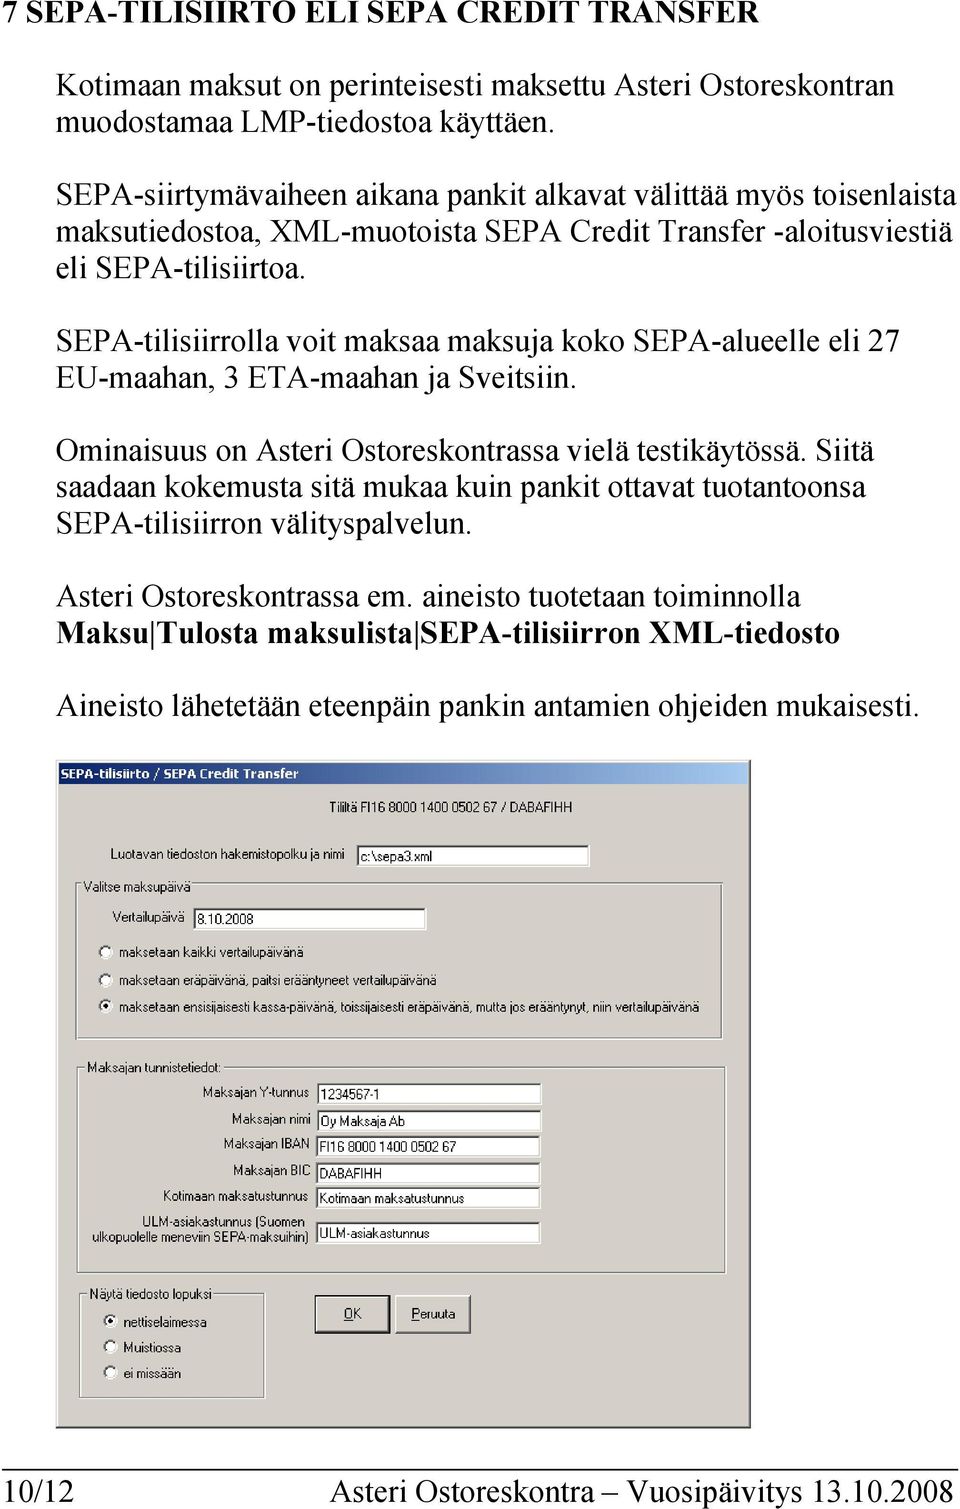 SEPA-tilisiirrolla voit maksaa maksuja koko SEPA-alueelle eli 27 EU-maahan, 3 ETA-maahan ja Sveitsiin. Ominaisuus on Asteri Ostoreskontrassa vielä testikäytössä.